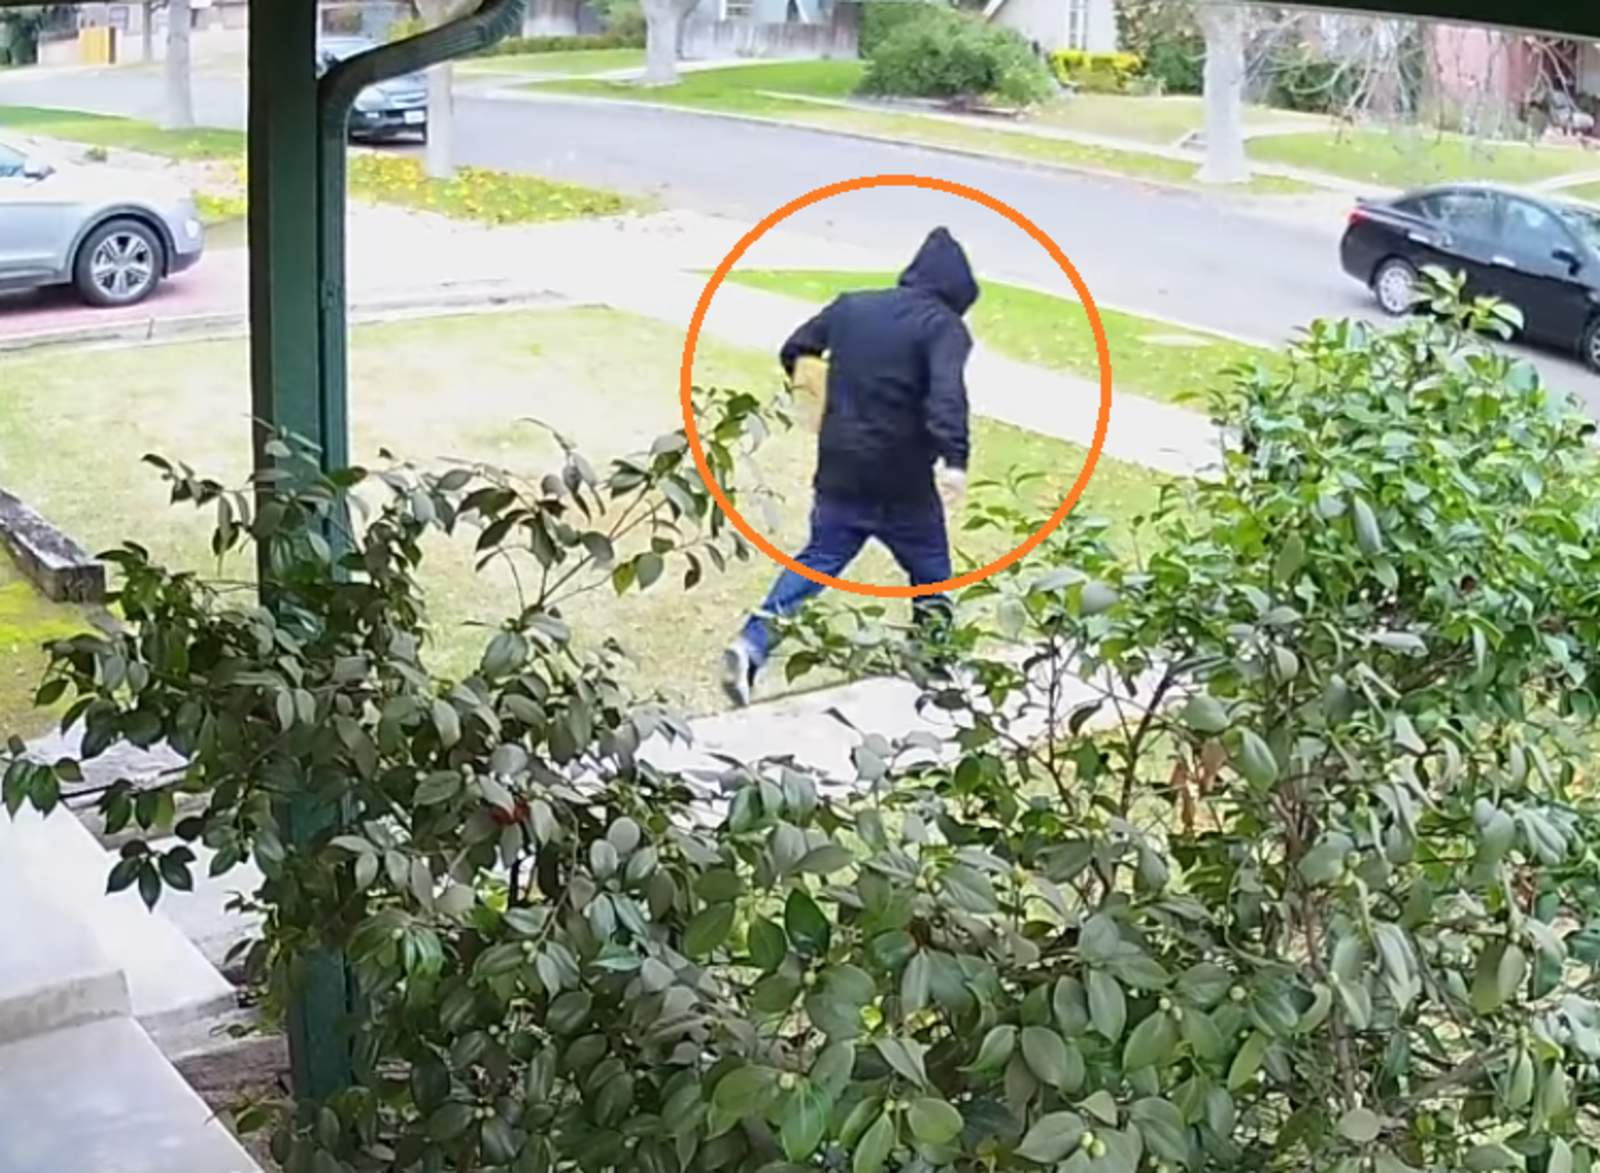 La persona publica el video en la red esperando que ayude a atrapar al delincuente. (INTERNET)